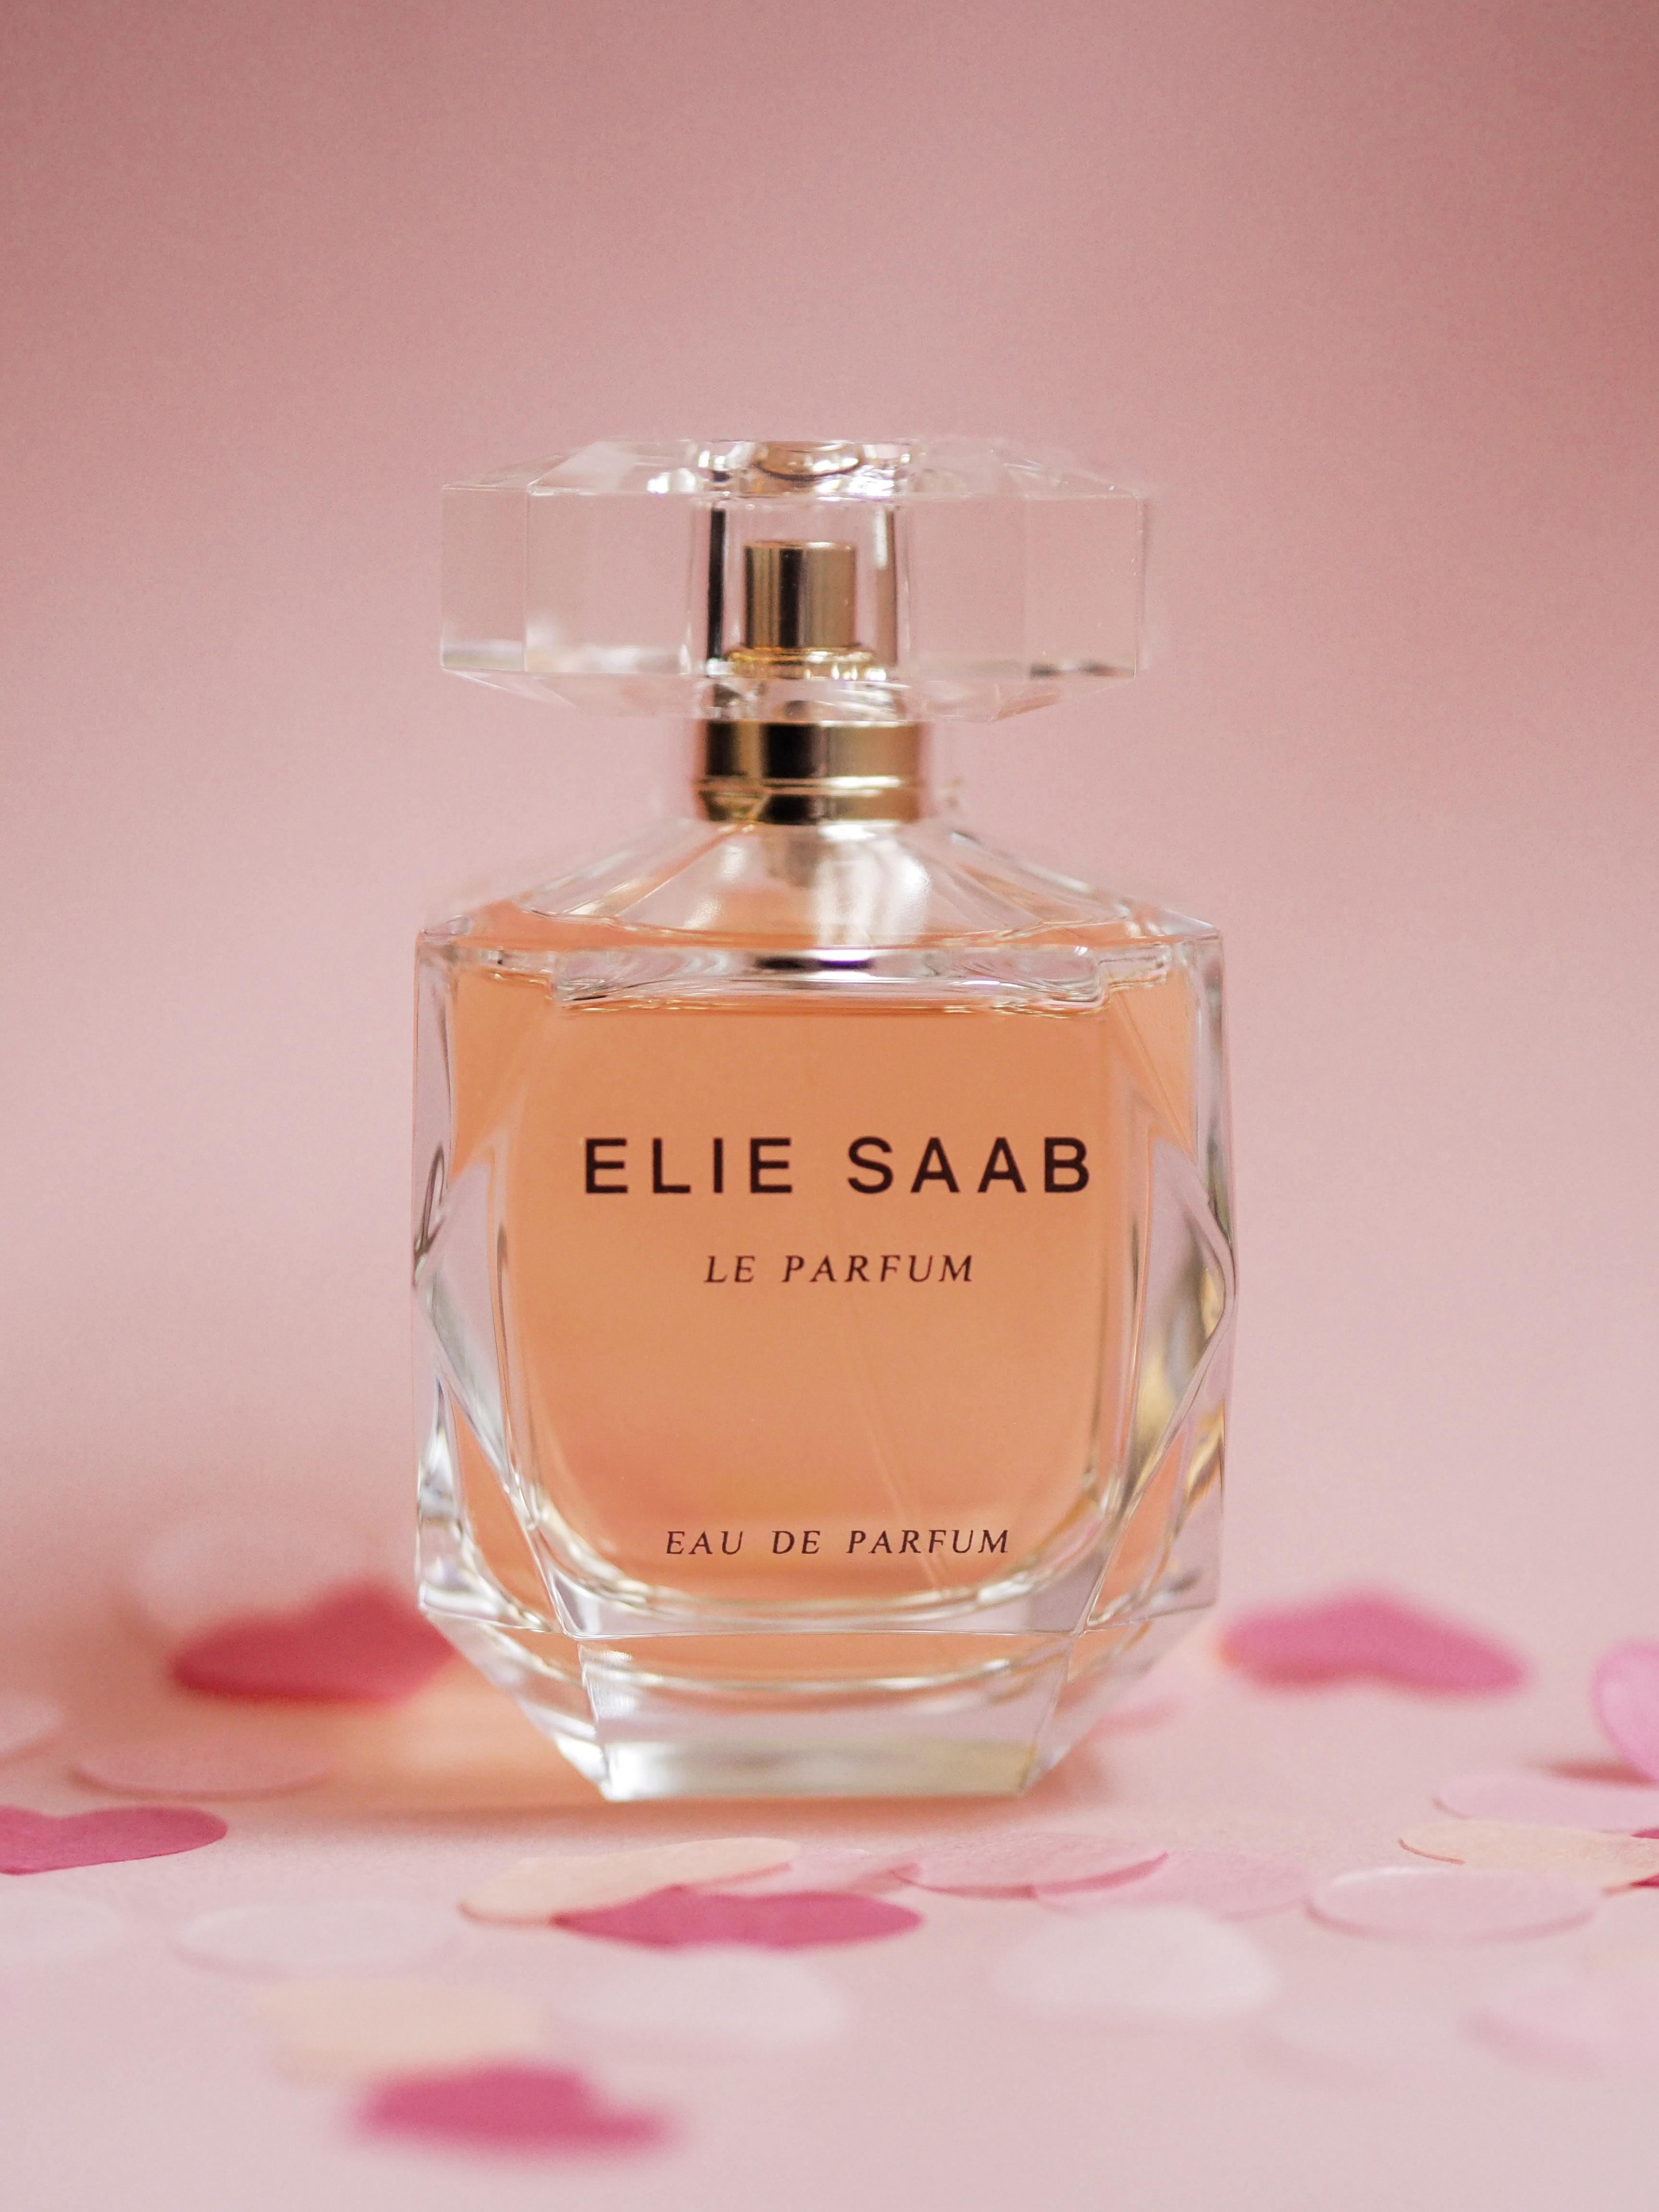 In "Le Parfum" von Elie Saab werden Orangenblüten mit Jasmin vereint - zart und verführerisch #loveisintheair #eliesaab